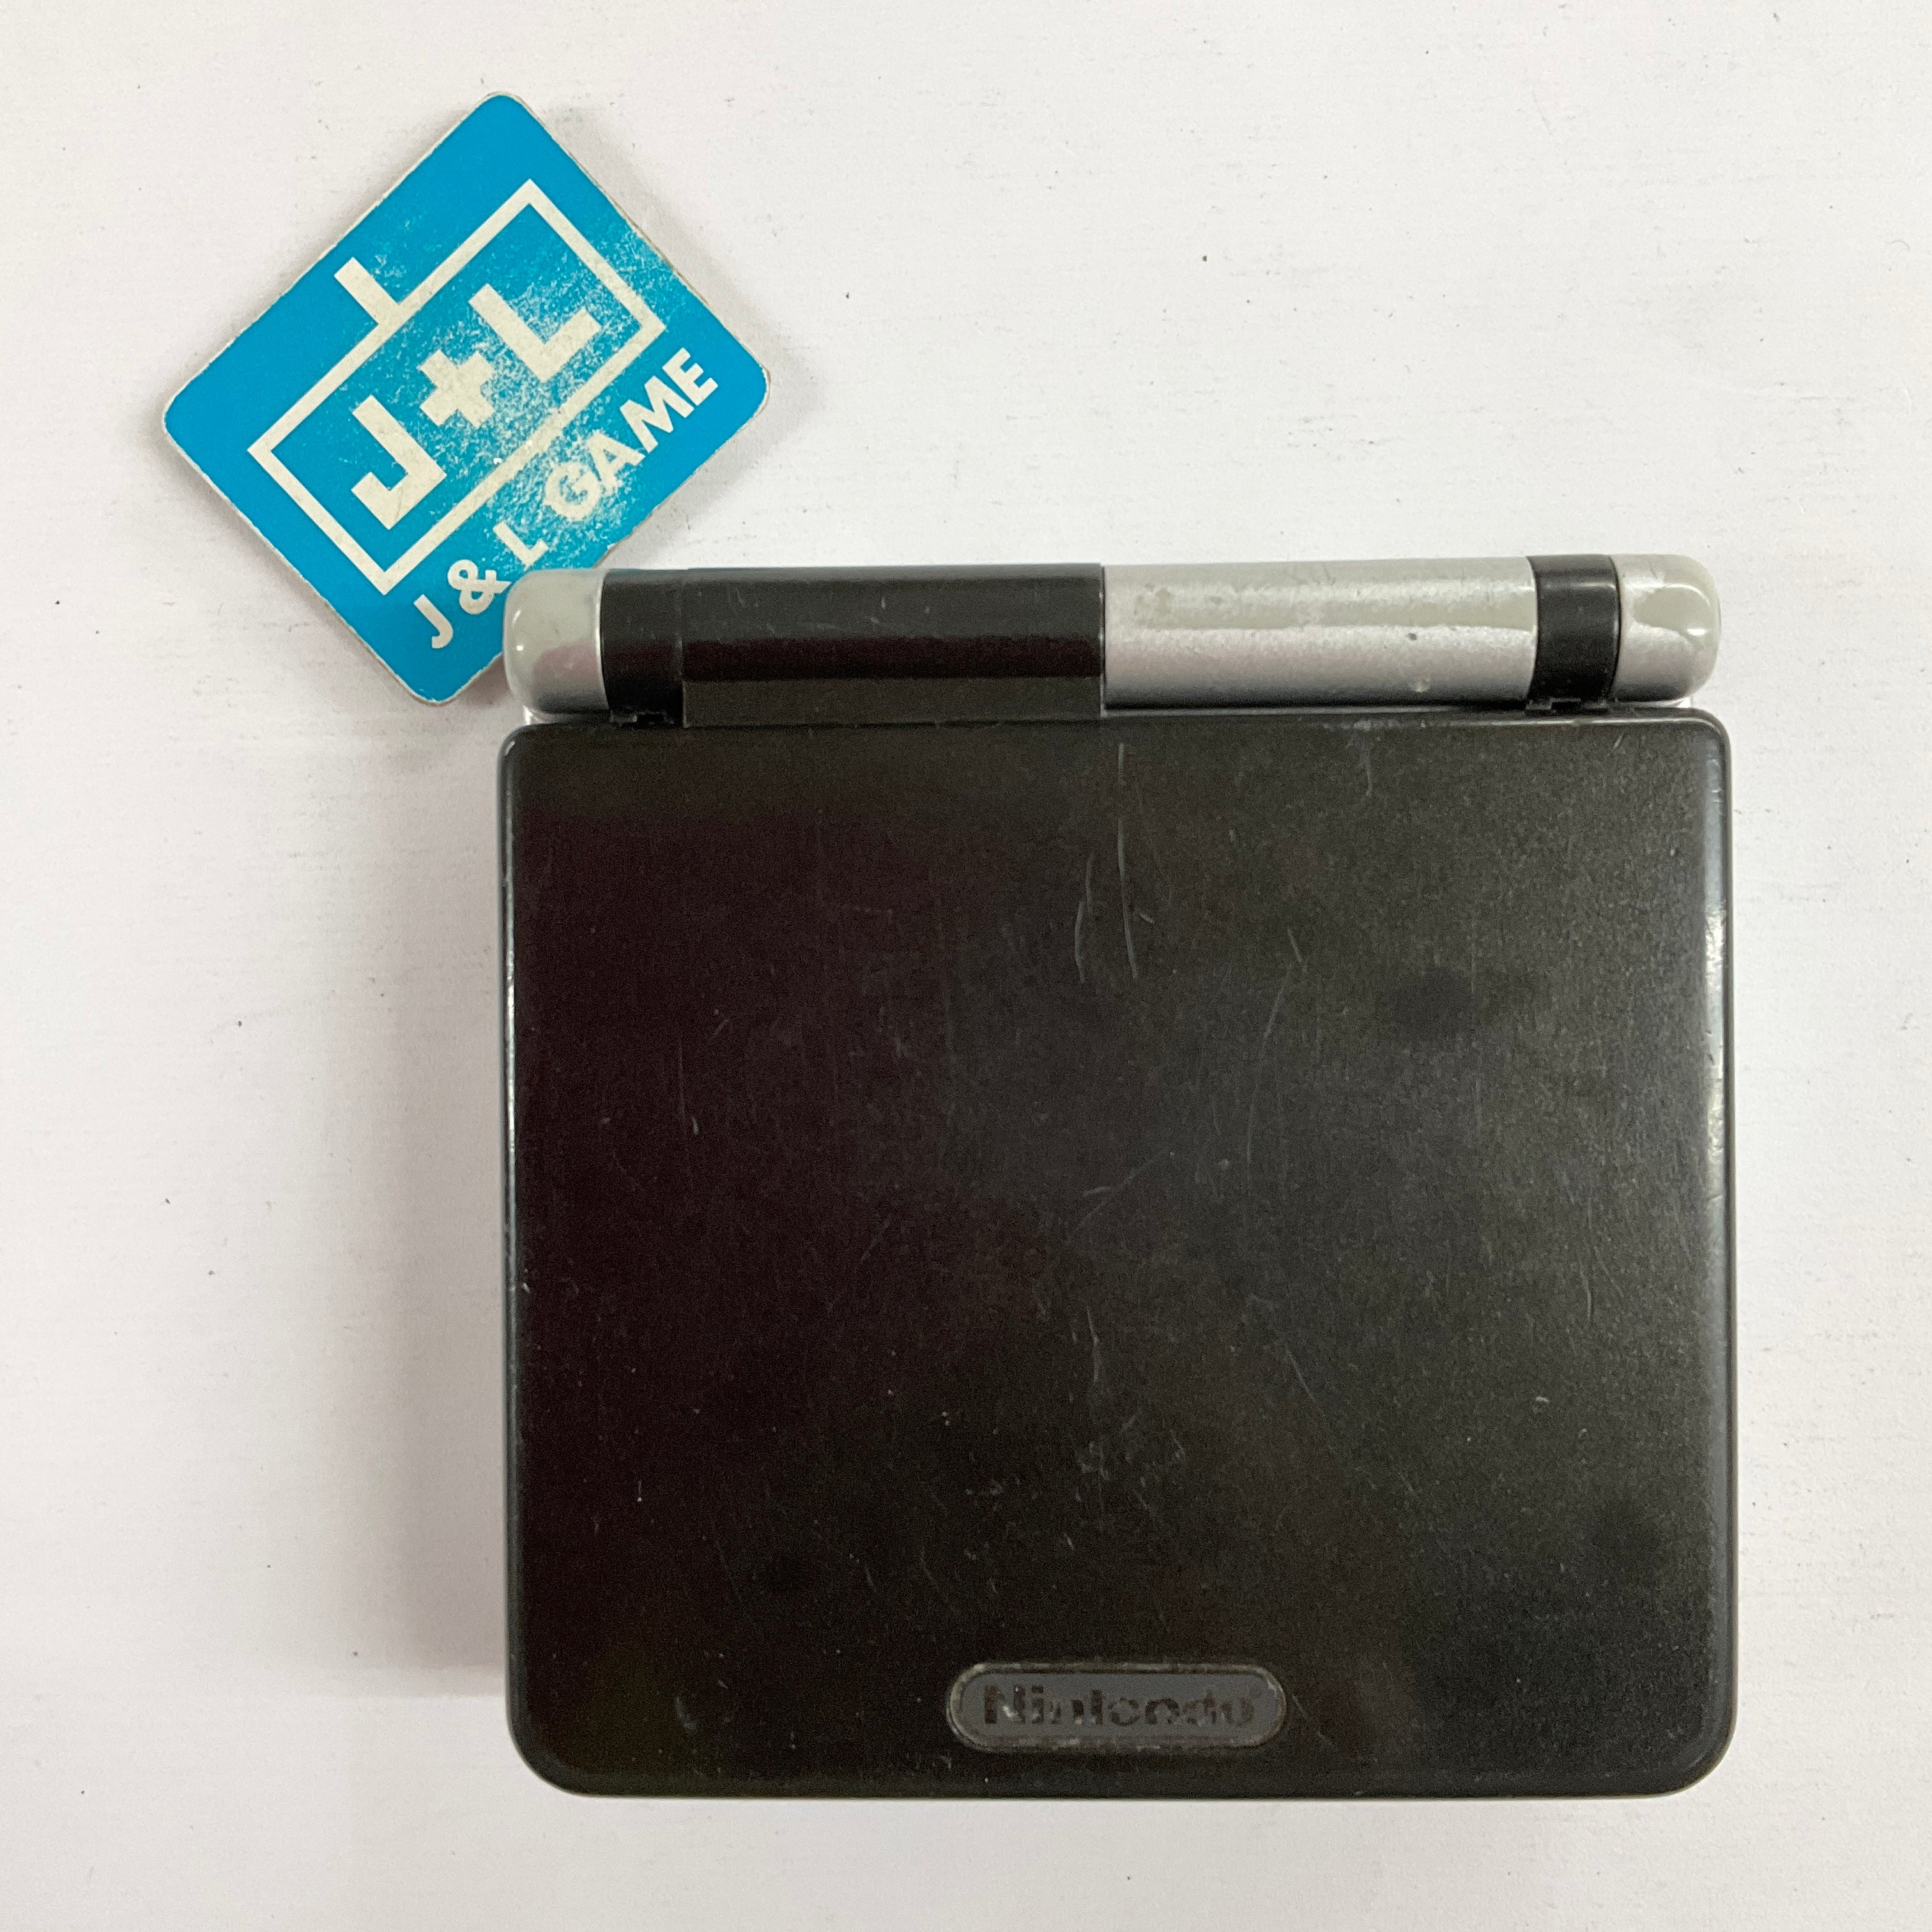 Nintendo Game Boy Advance SP Console AGS-001 (Silver/Black) - (GBA) Game Boy Advance SP [Pre-Owned] CONSOLE Nintendo   